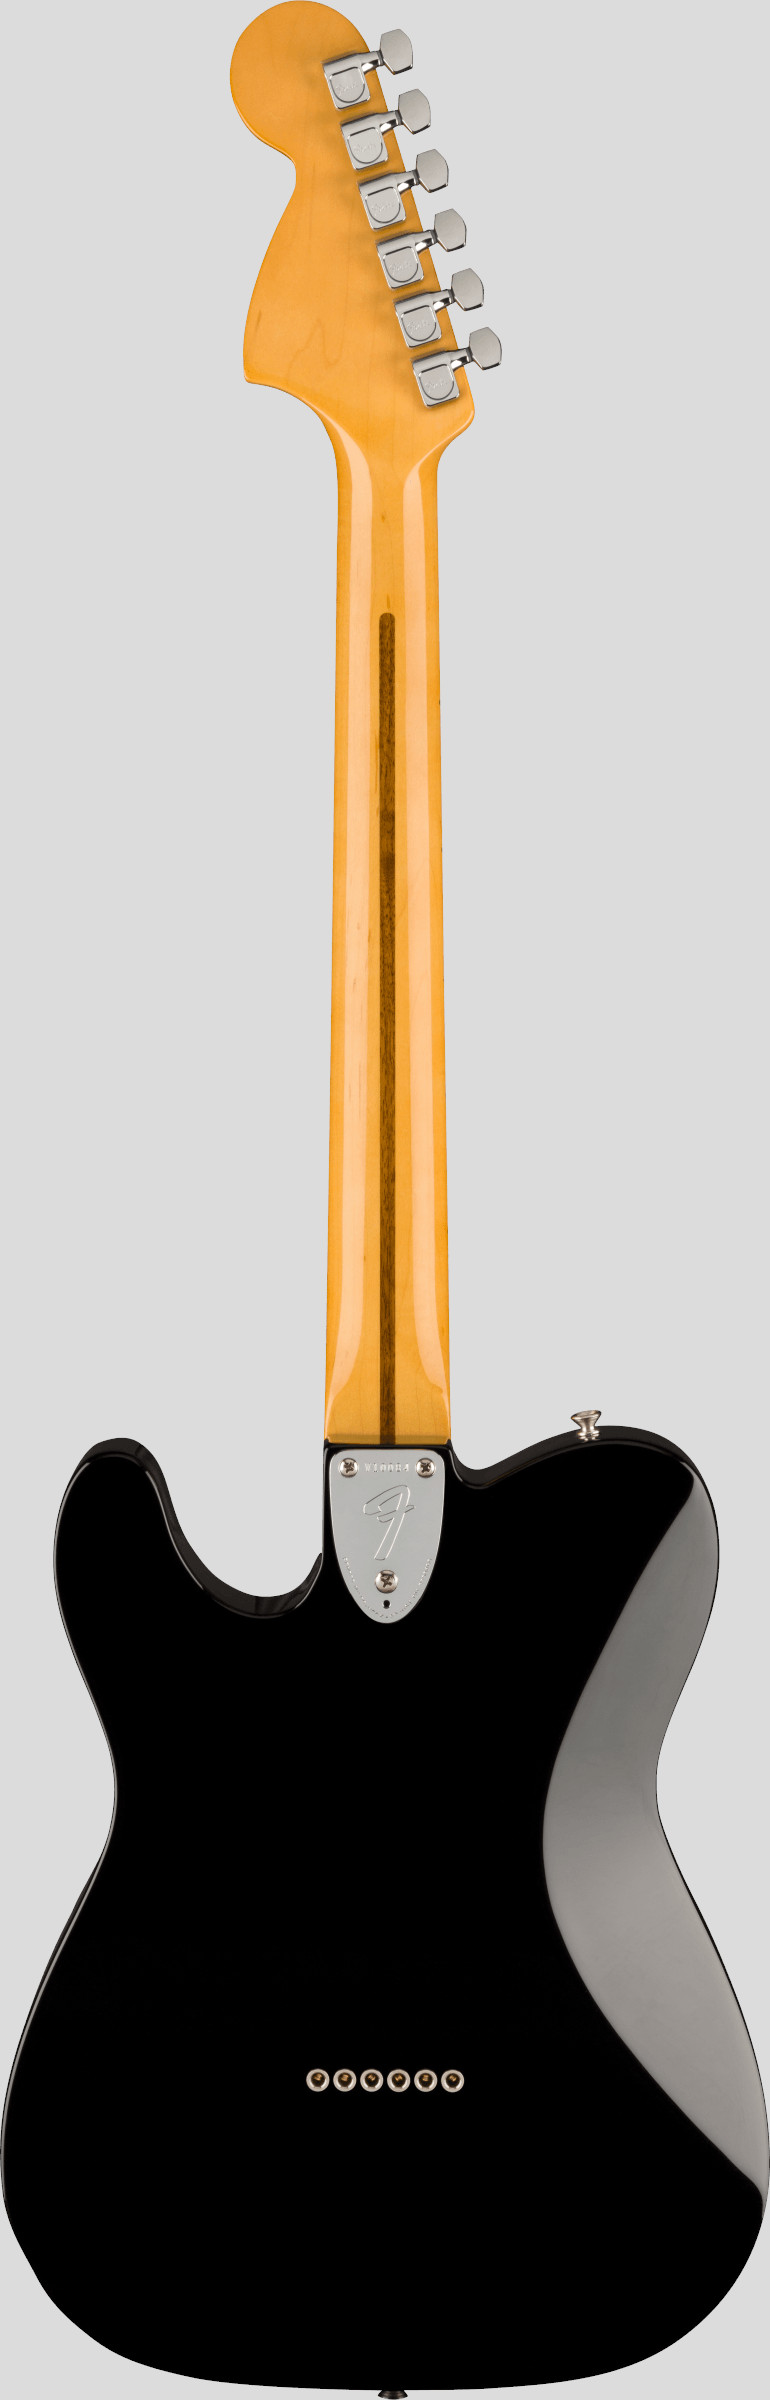 Fender American Vintage II 1975 Telecaster Deluxe Black 2